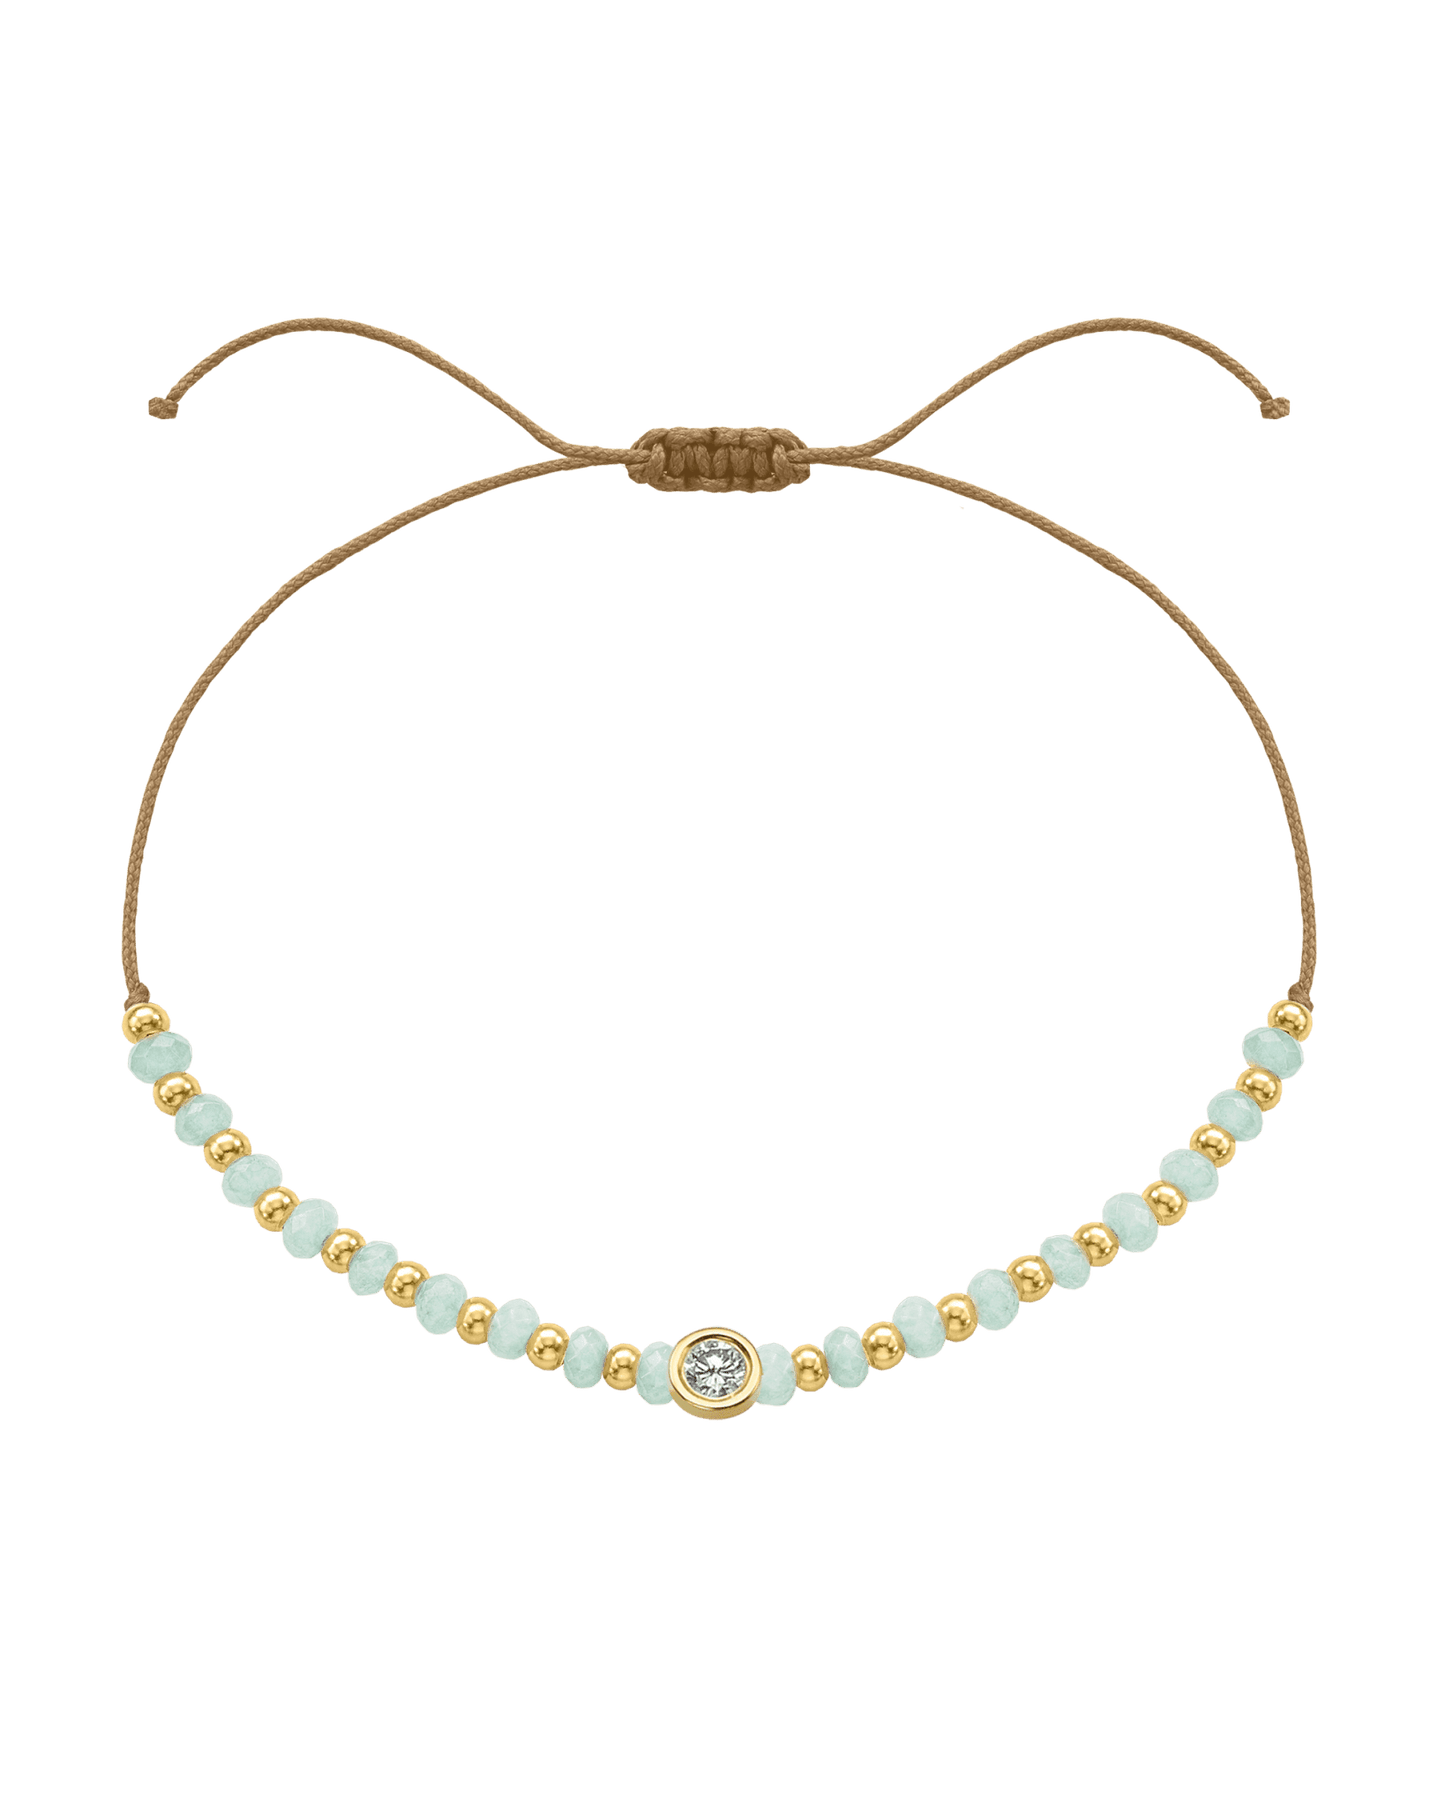 Apatite Gemstone String of Love Bracelet for Inspiration - 14K Yellow Gold Bracelets 14K Solid Gold Camel Large: 0.1ct 